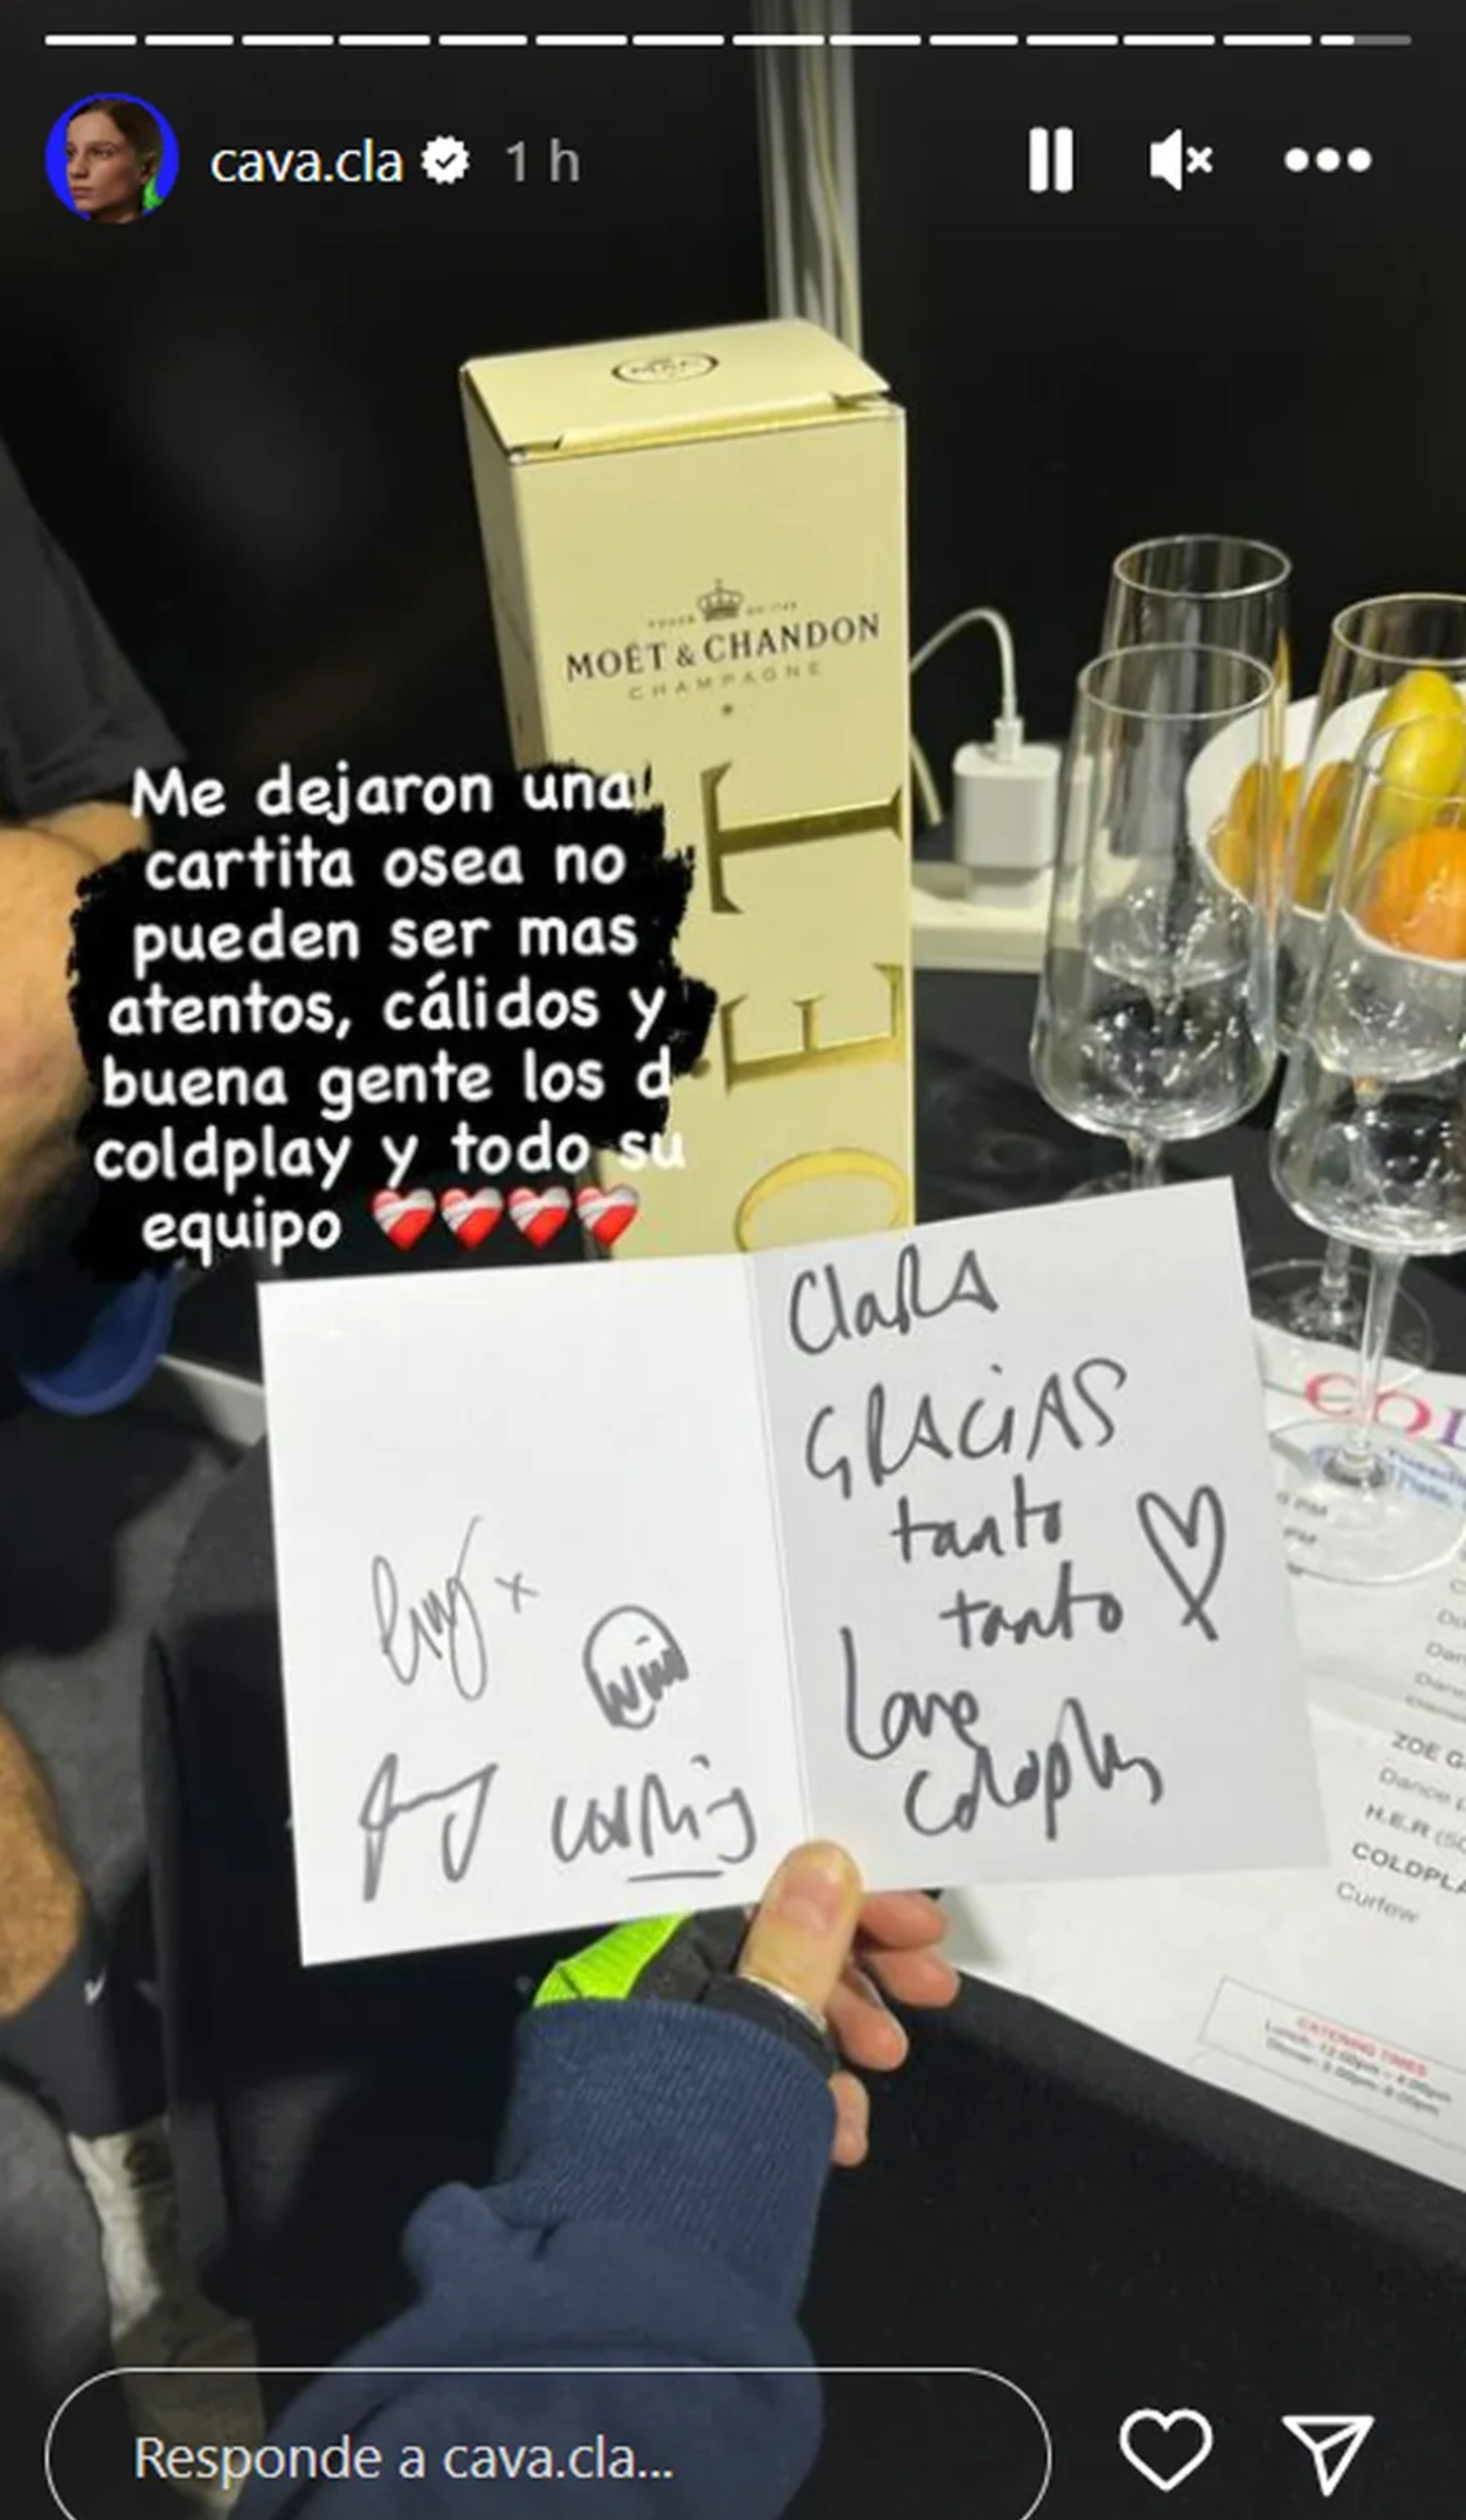 La carta de Coldplay a Clara Cava